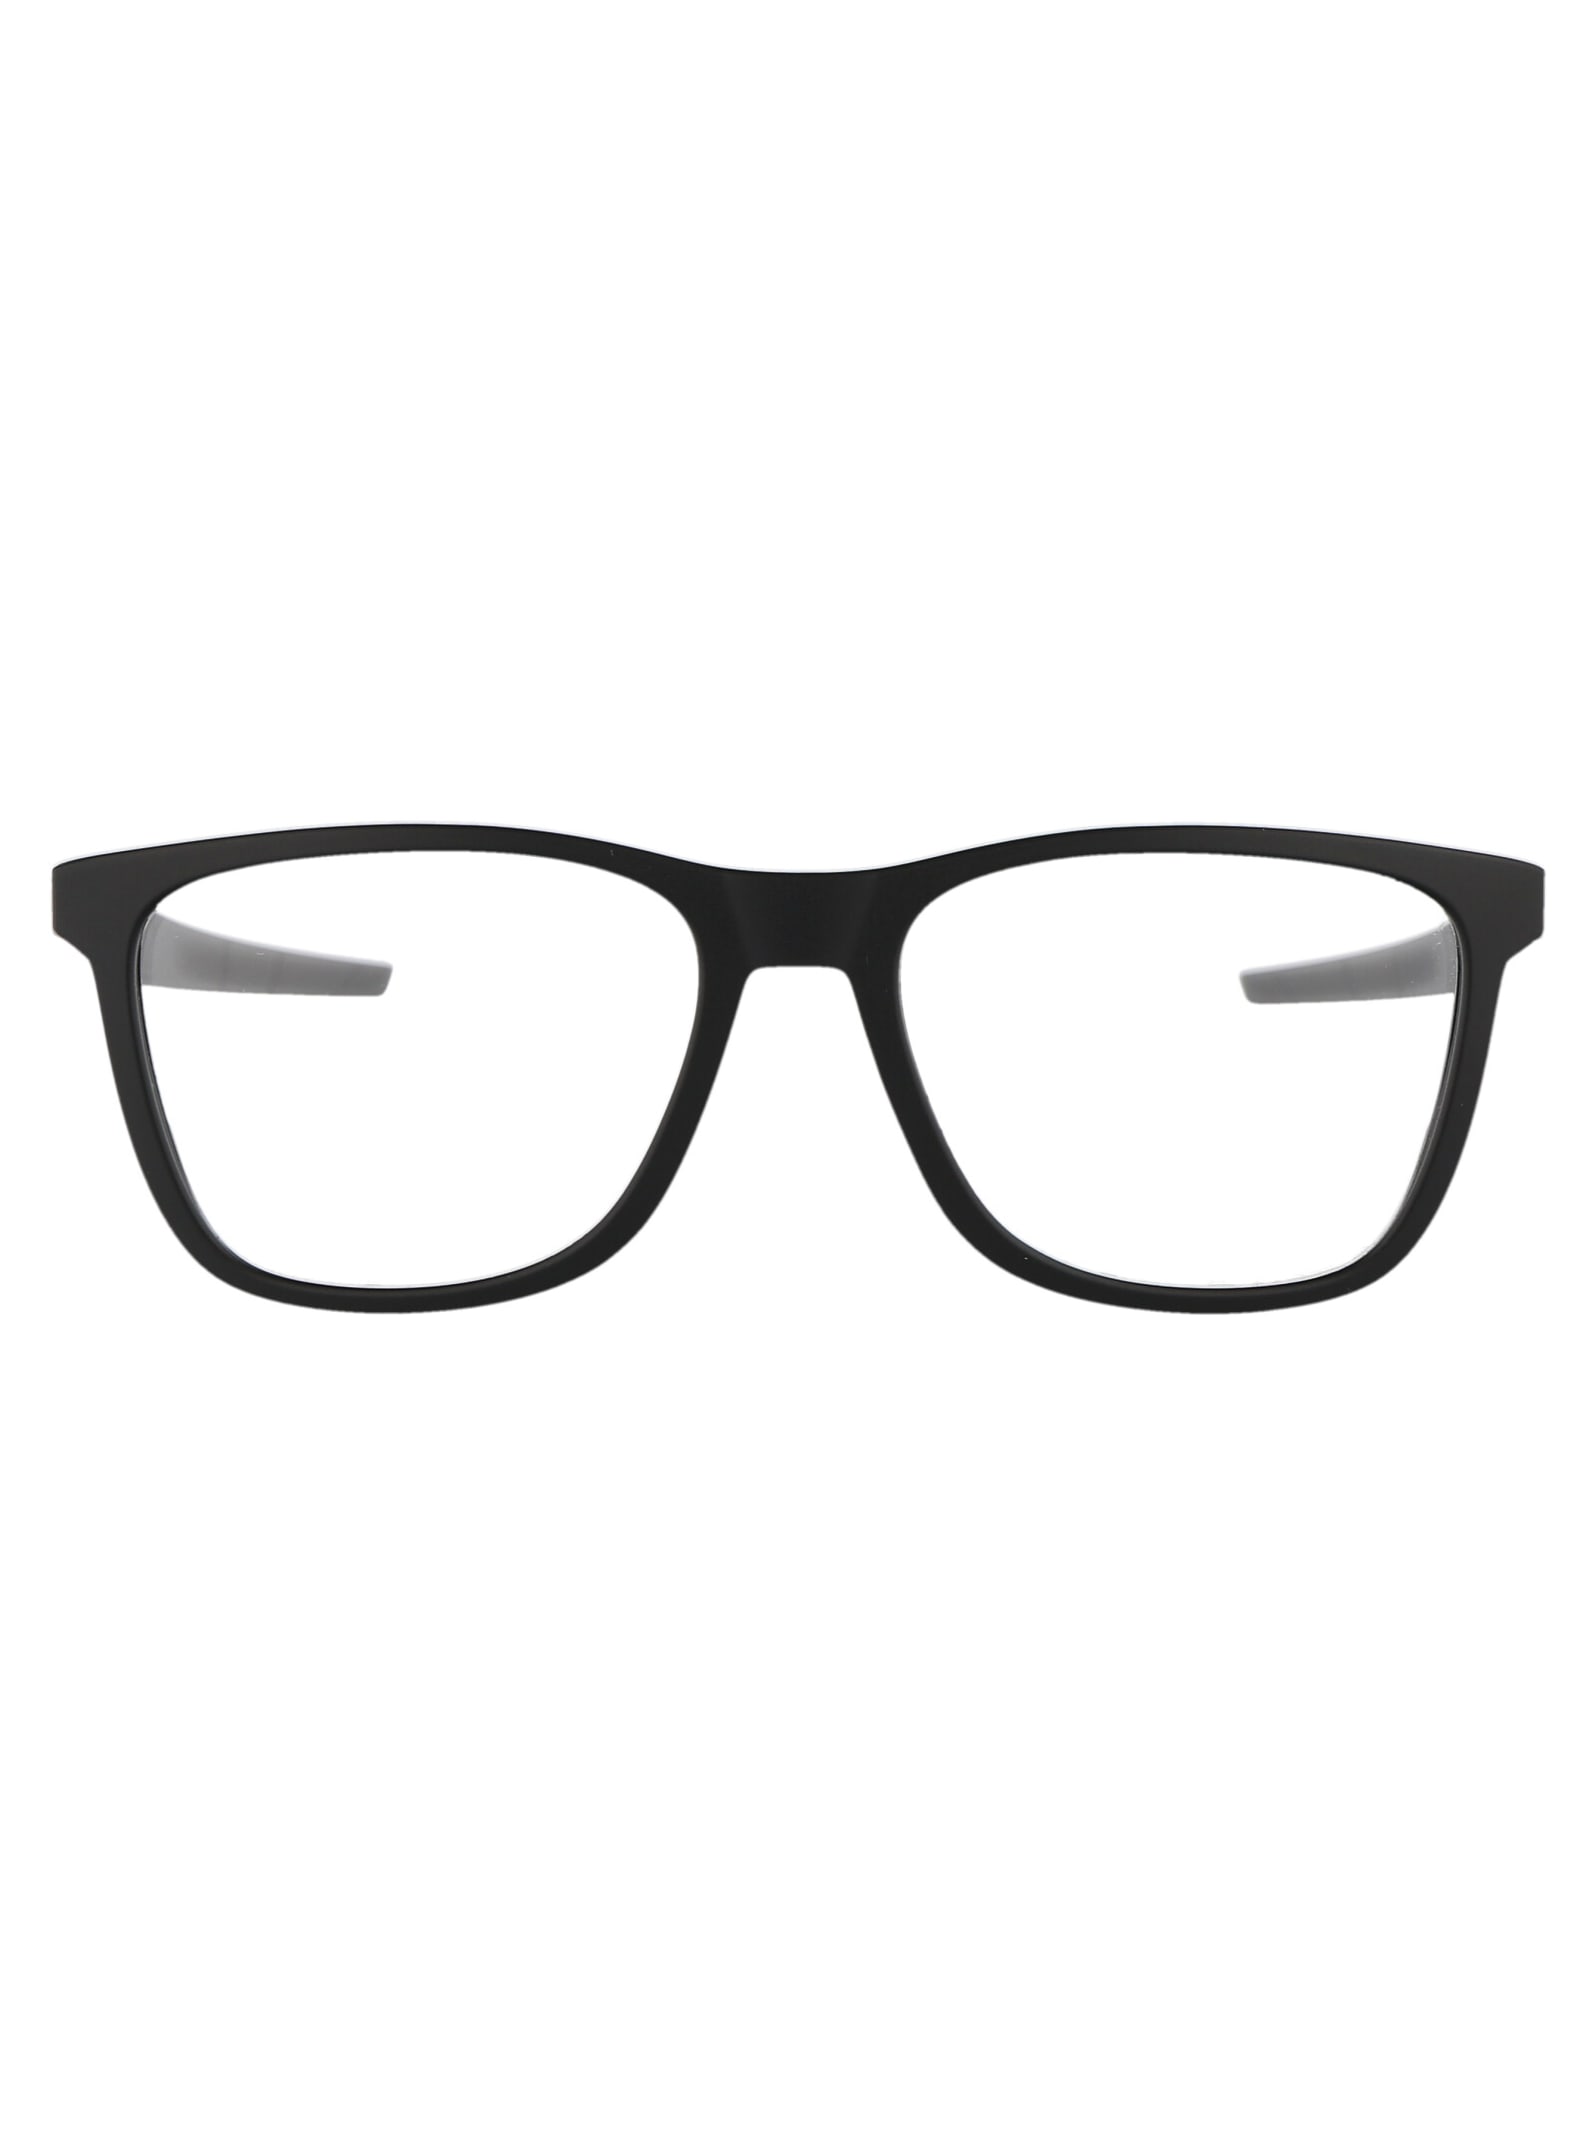 Centerboard Glasses